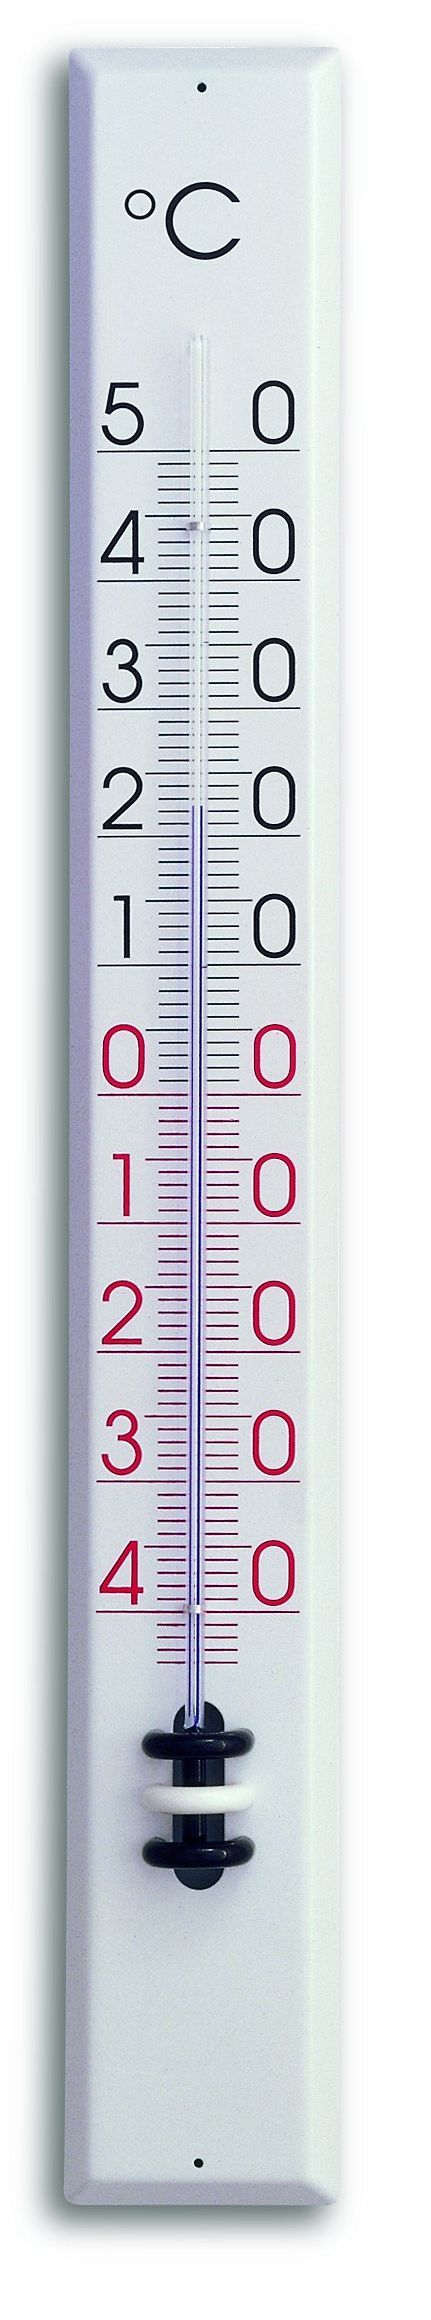 Temperatur-Messgerät TFA 30.1029 für 2